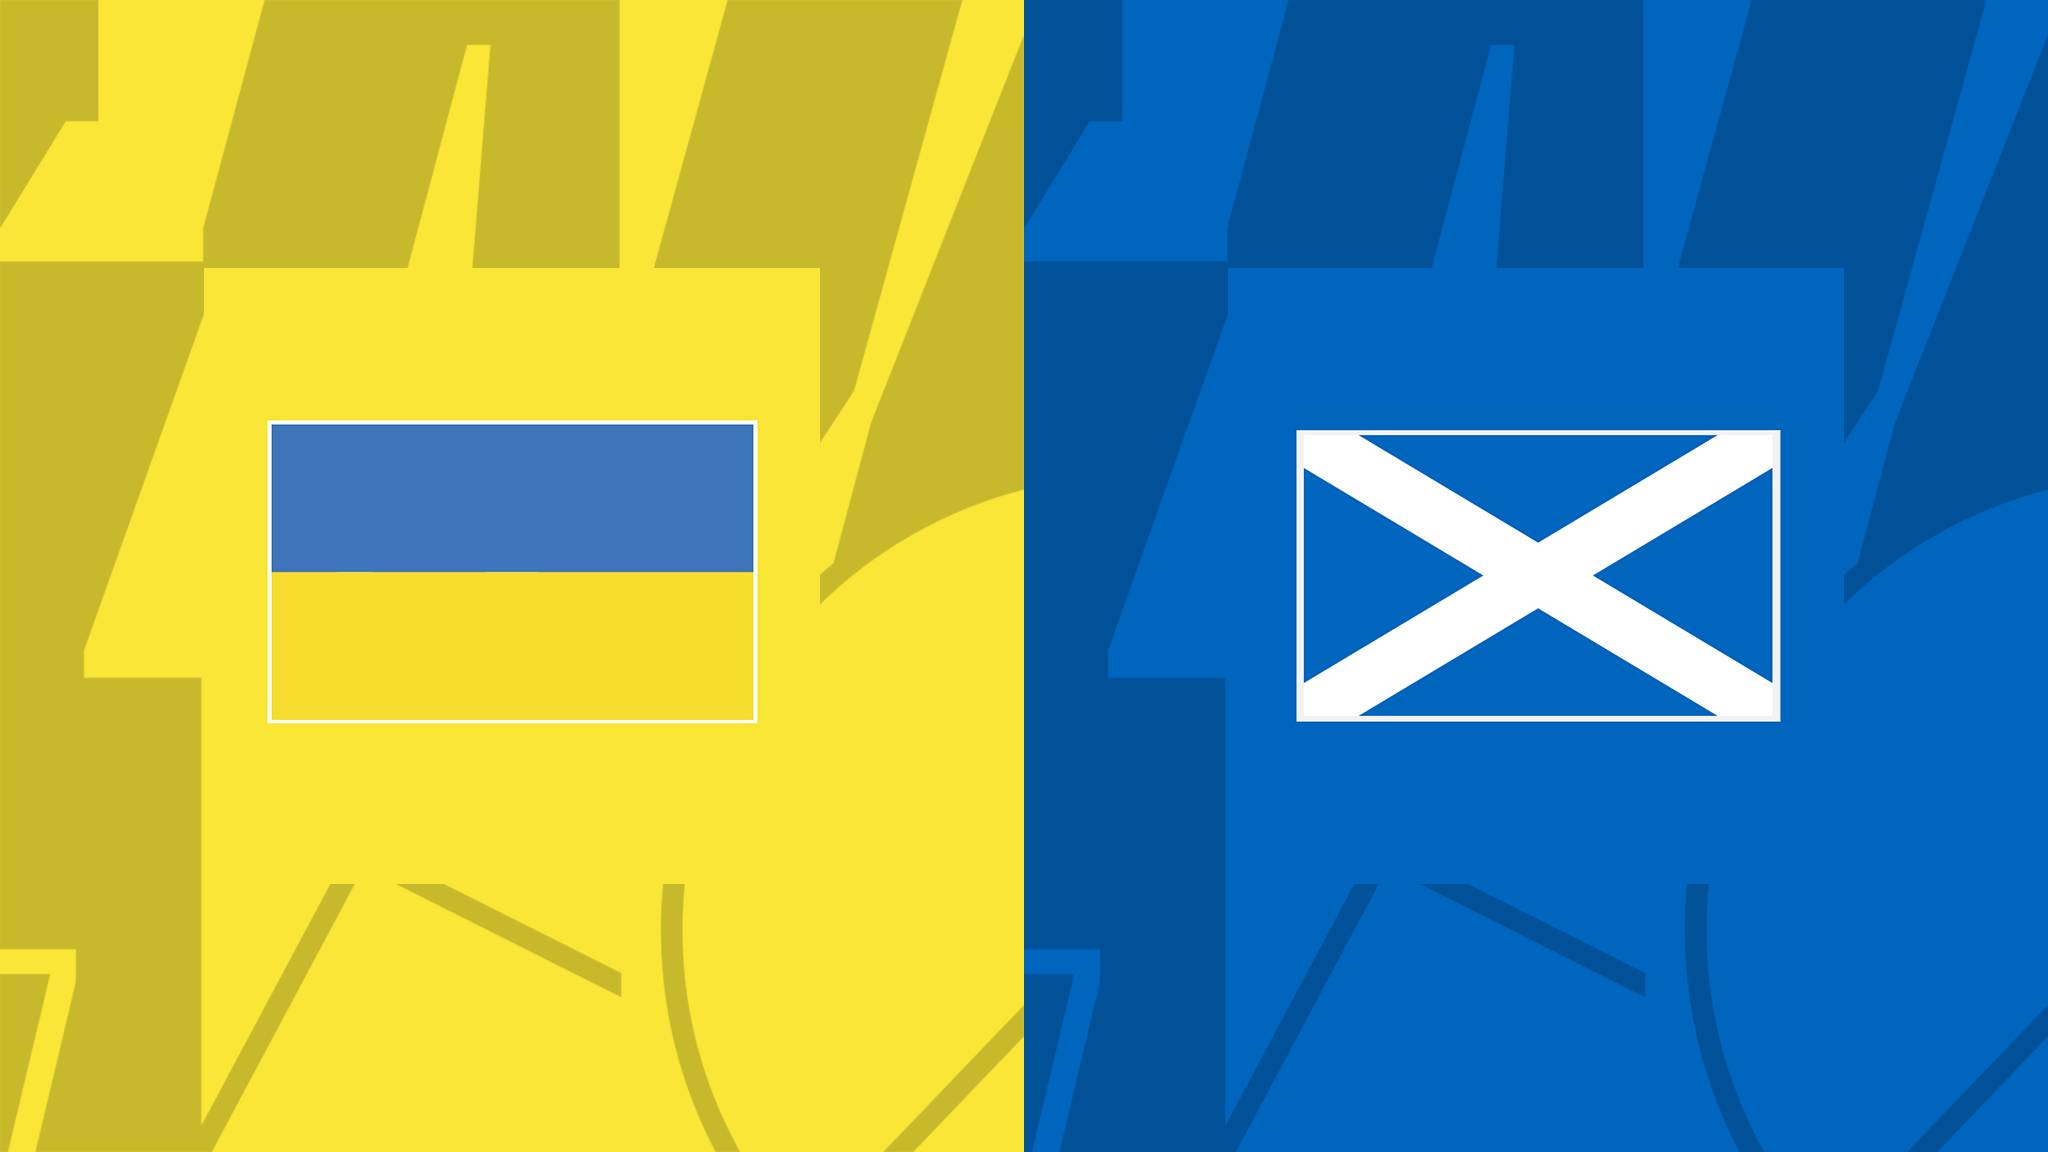 مباراة أوكرانيا وإسكوتلندا فى دوري الأمم الأوروبية 27 سبتمبر 2022 Ukraine VS Scotland